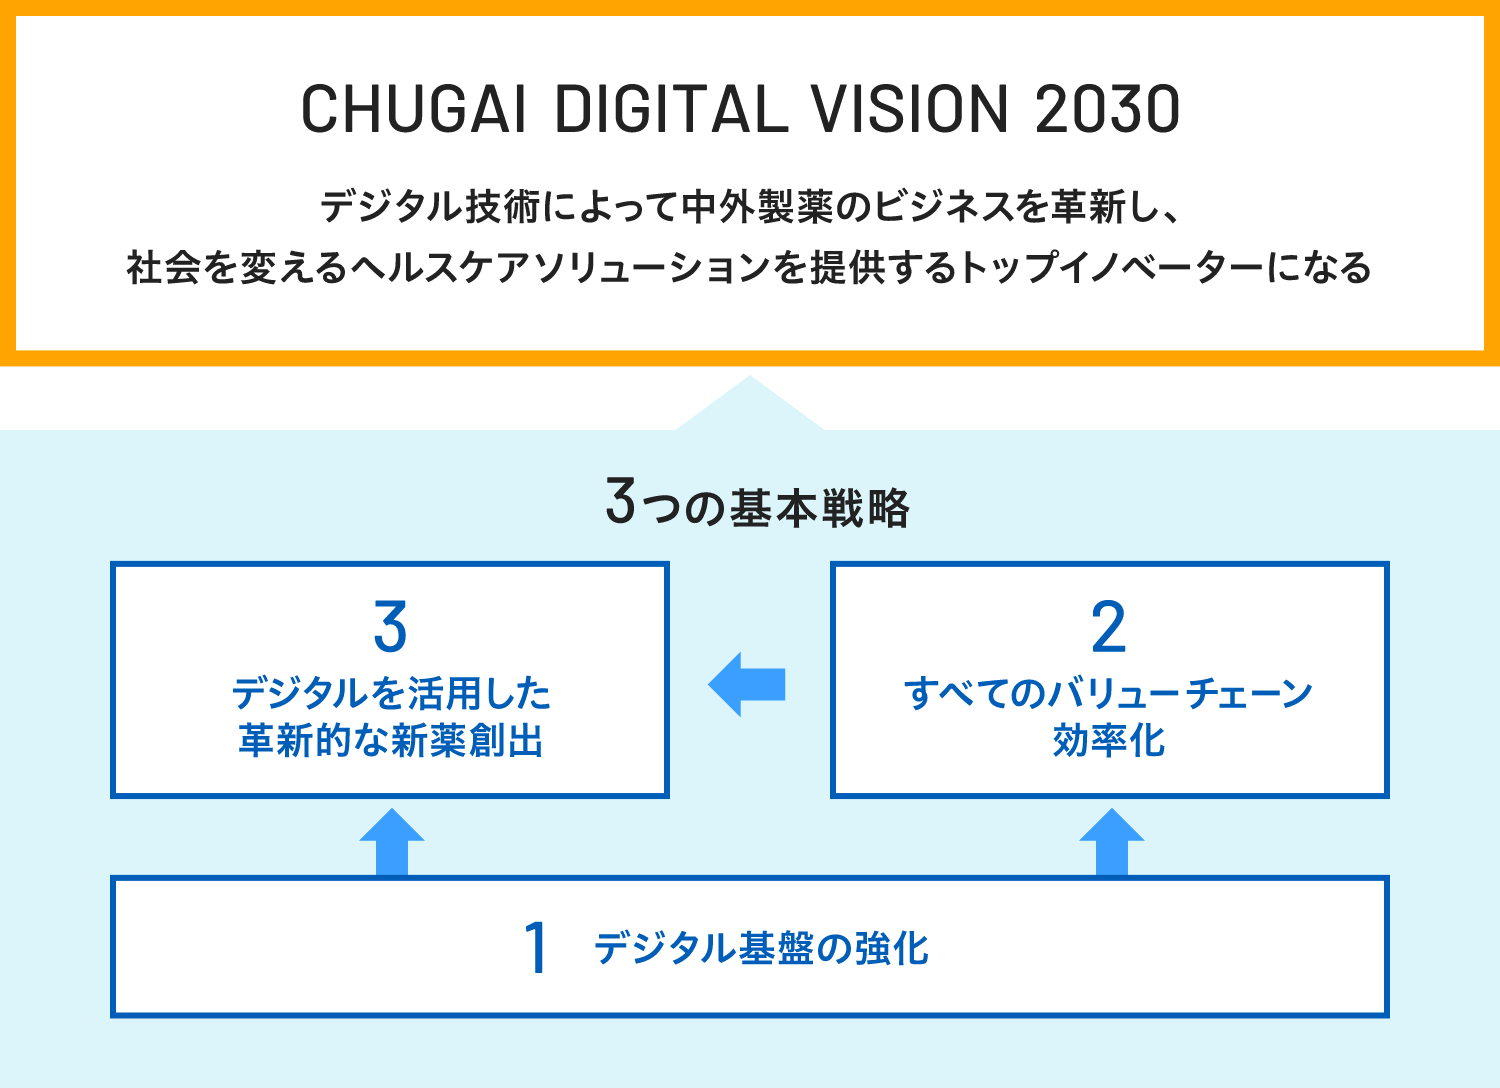 CHUGAI DIGITAL VISION 2030　デジタル技術によって中外製薬のビジネスを革新し、社会を変えるヘルスケアソリューションを提供するトップイノベーターになる　3つの基本戦略　1.デジタルを活用した革新的な新薬創出　2.すべてのバリューチェーン効率化　3.デジタル基盤の強化